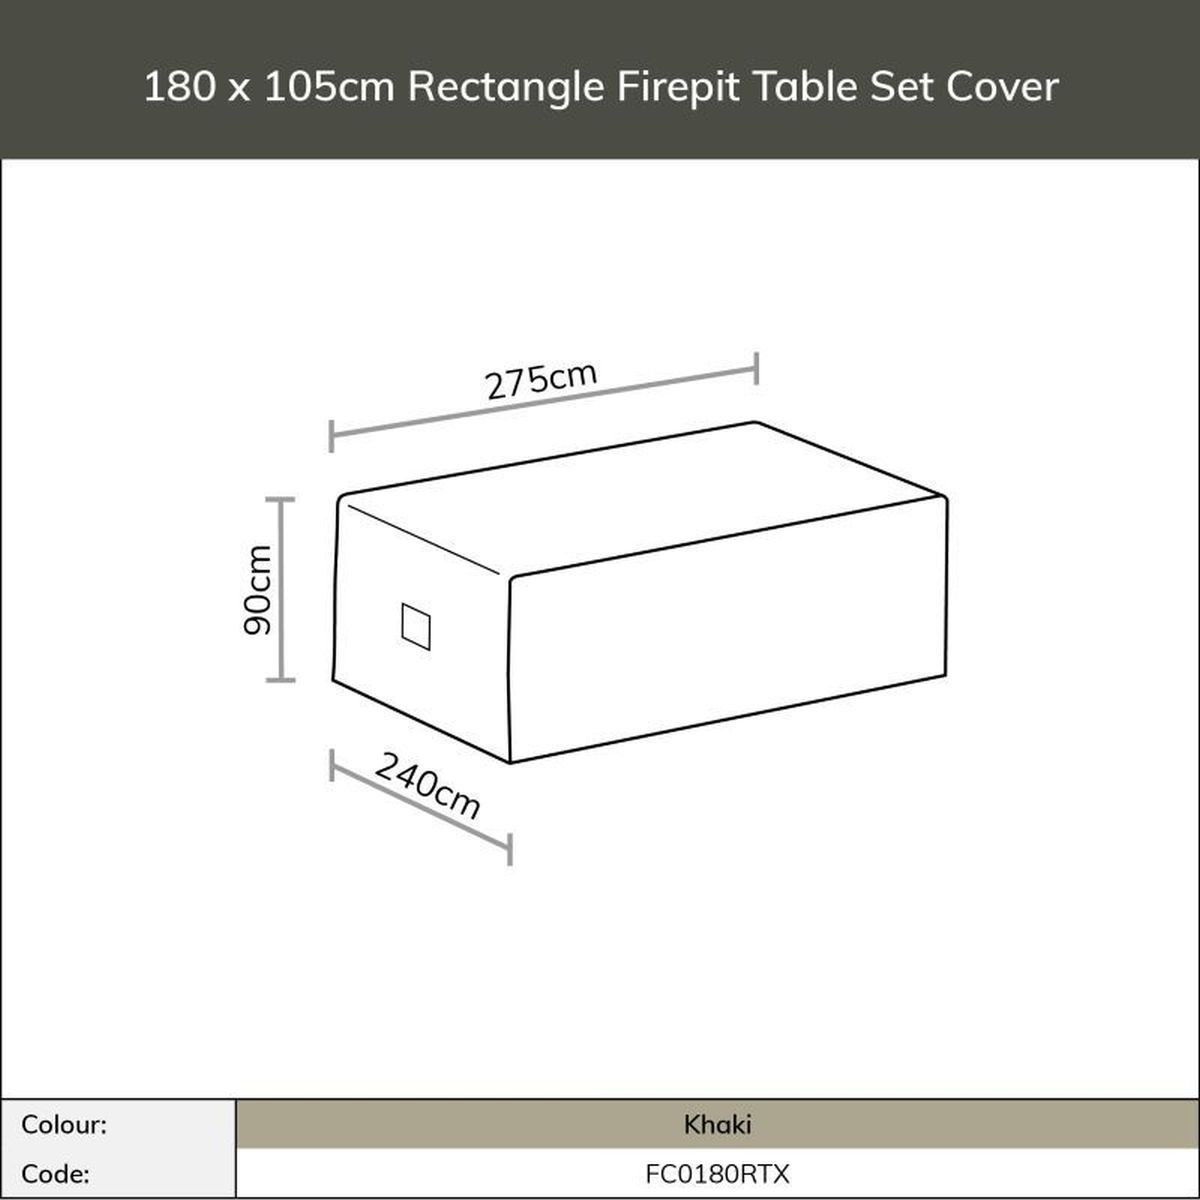 Bramblecrest 180x105cm Rectangle Firepit Table Set Cover